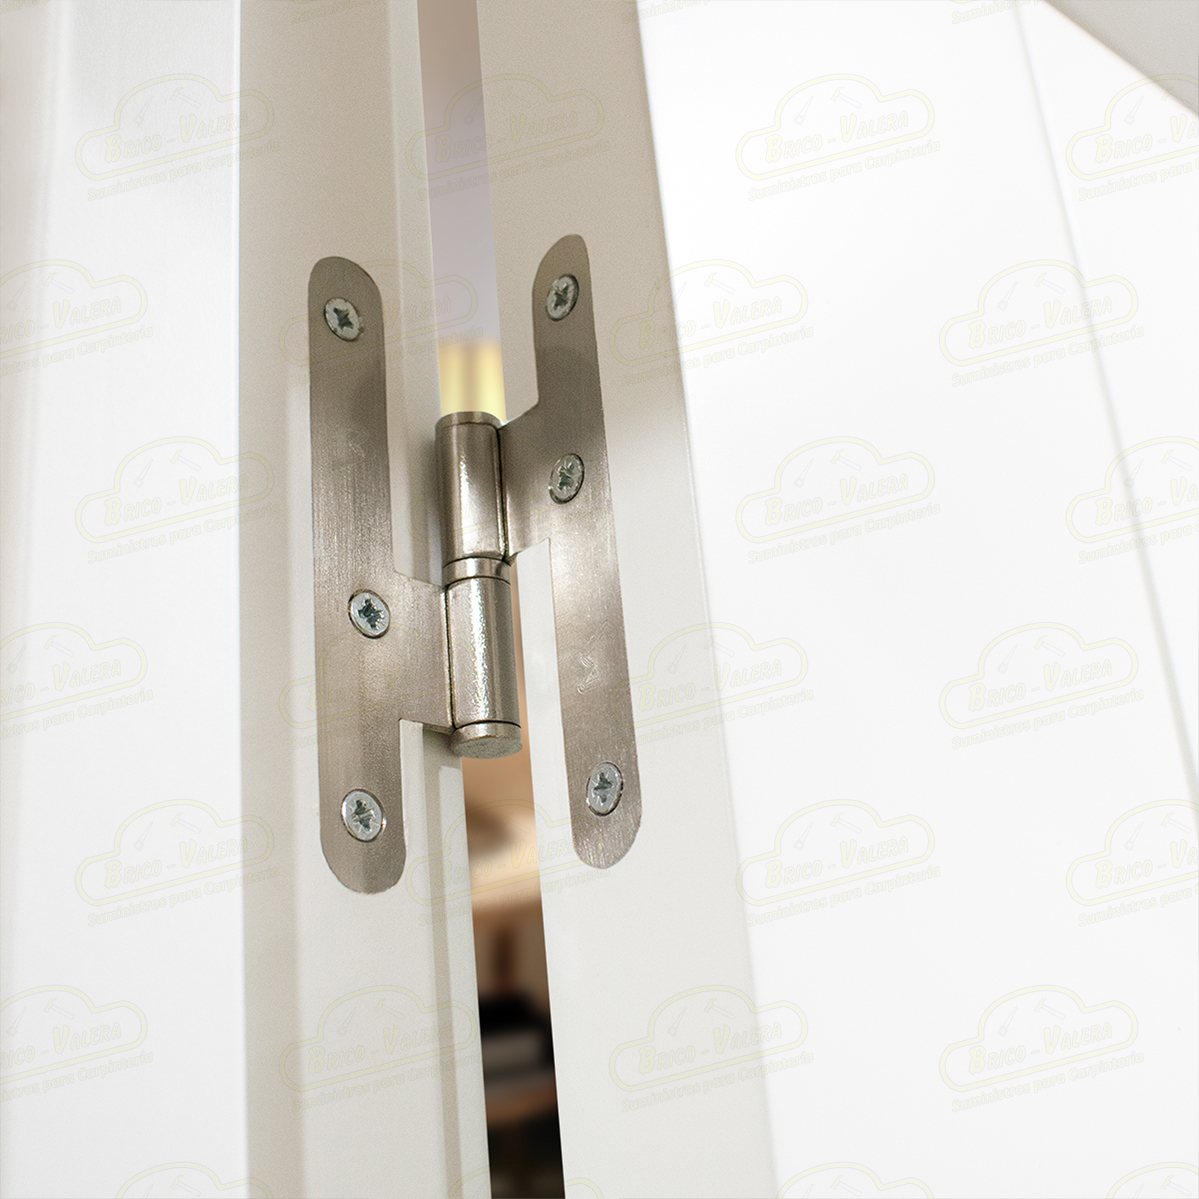 Puerta Premium PVT10 Lacada Blanca con Manillas Doradas de Interior en Block (Maciza)